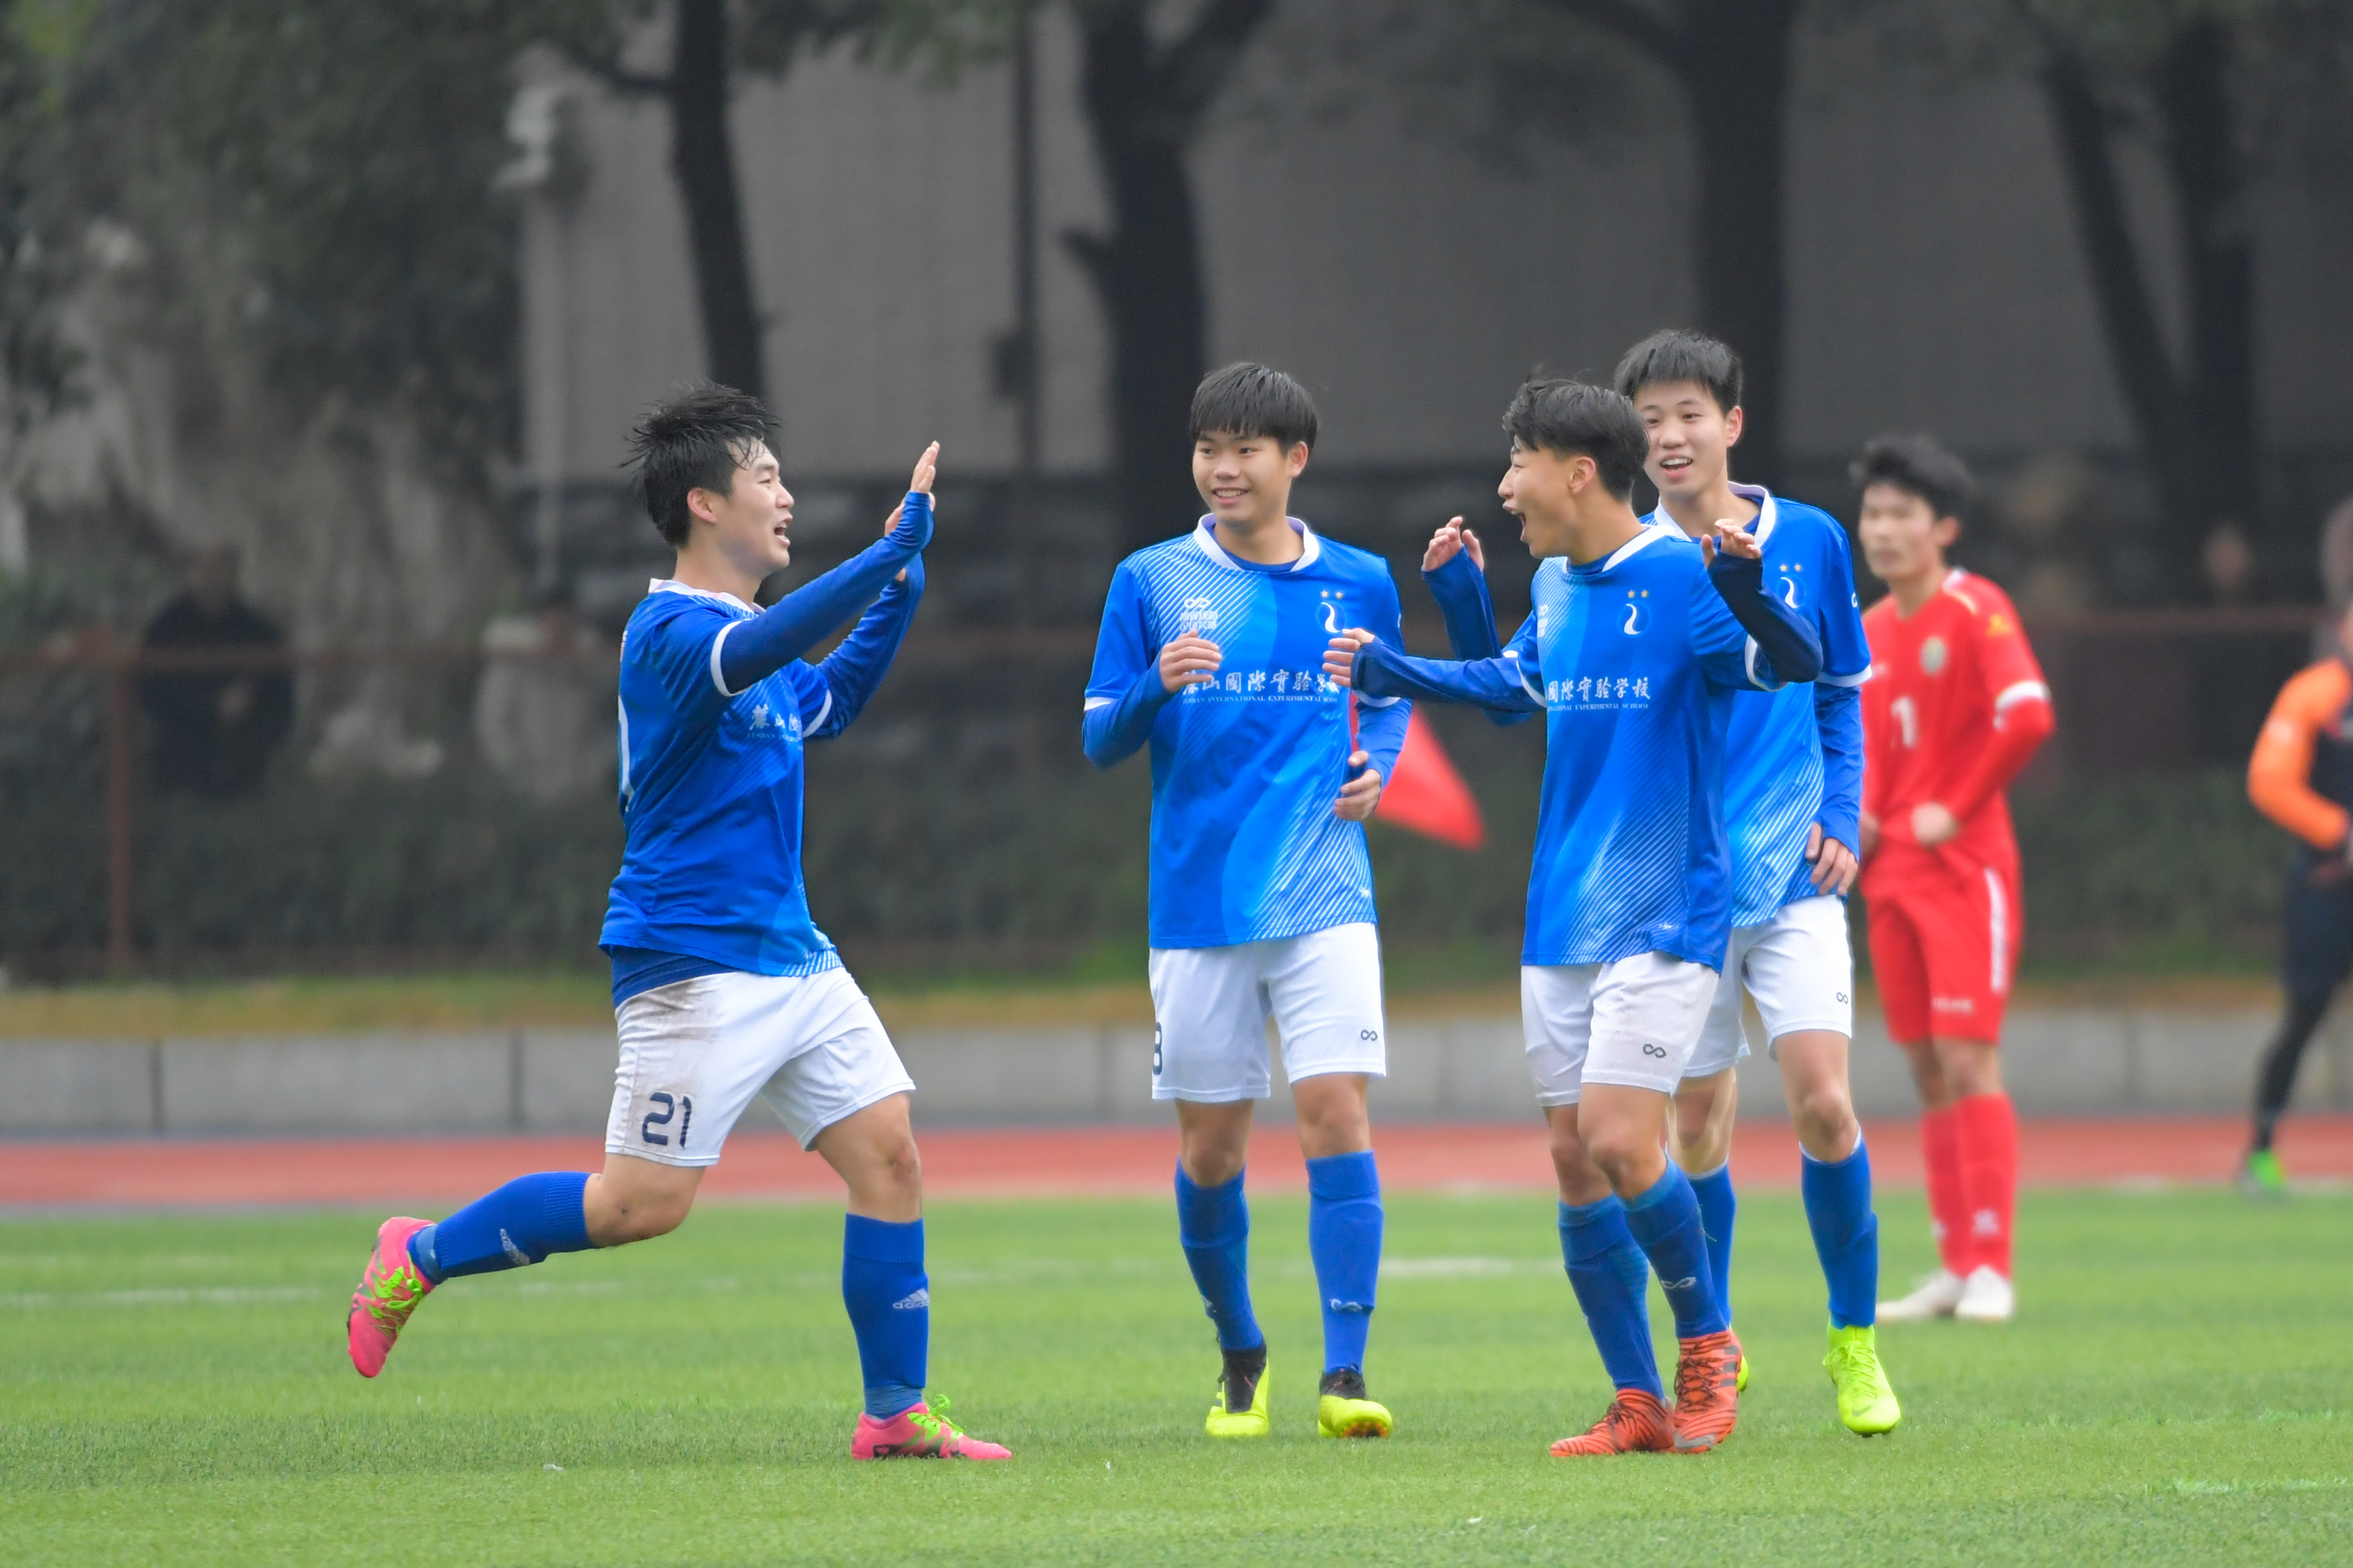 足球--中国中学生足球协会杯高中男子甲级:长沙